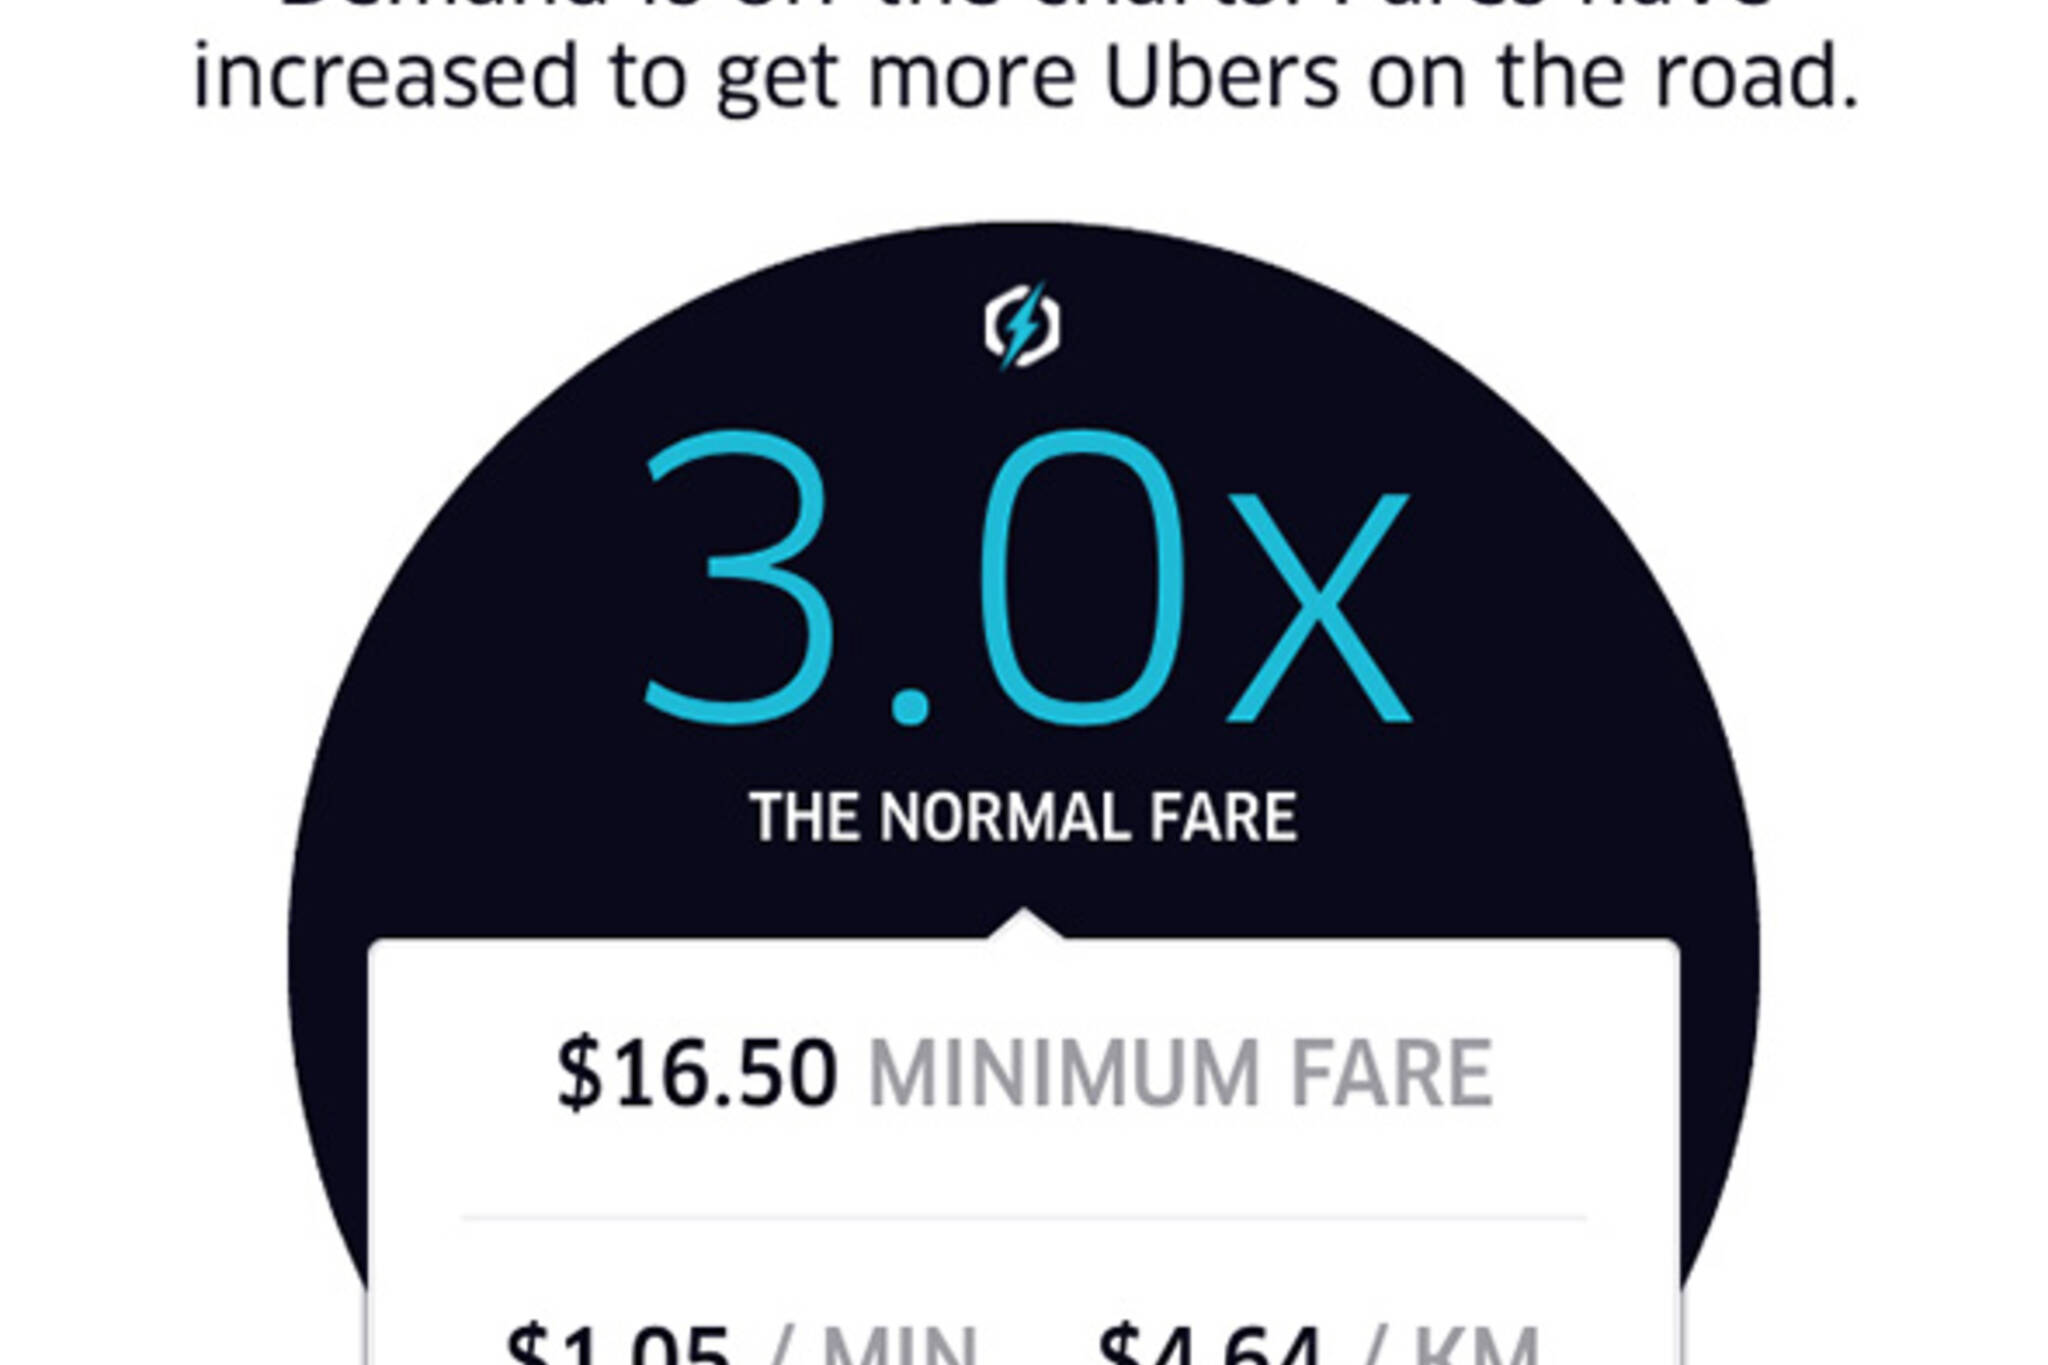 uber surge pricing